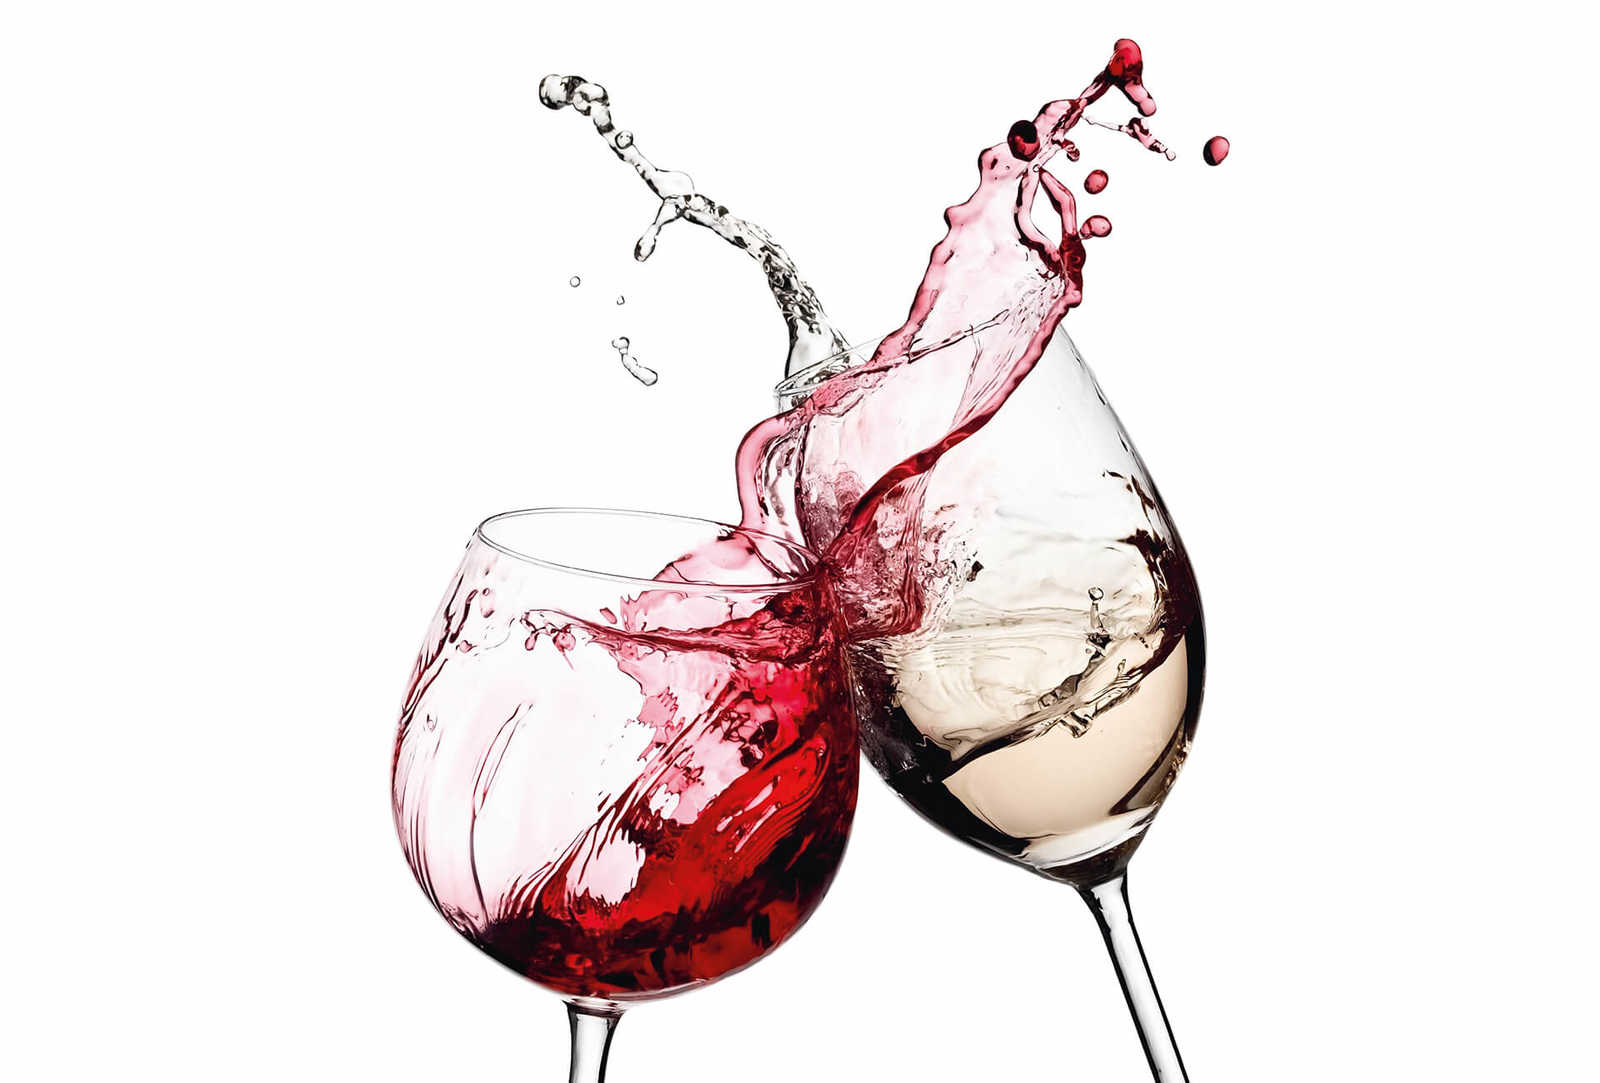         Kitchen mural wine glasses red & white
    